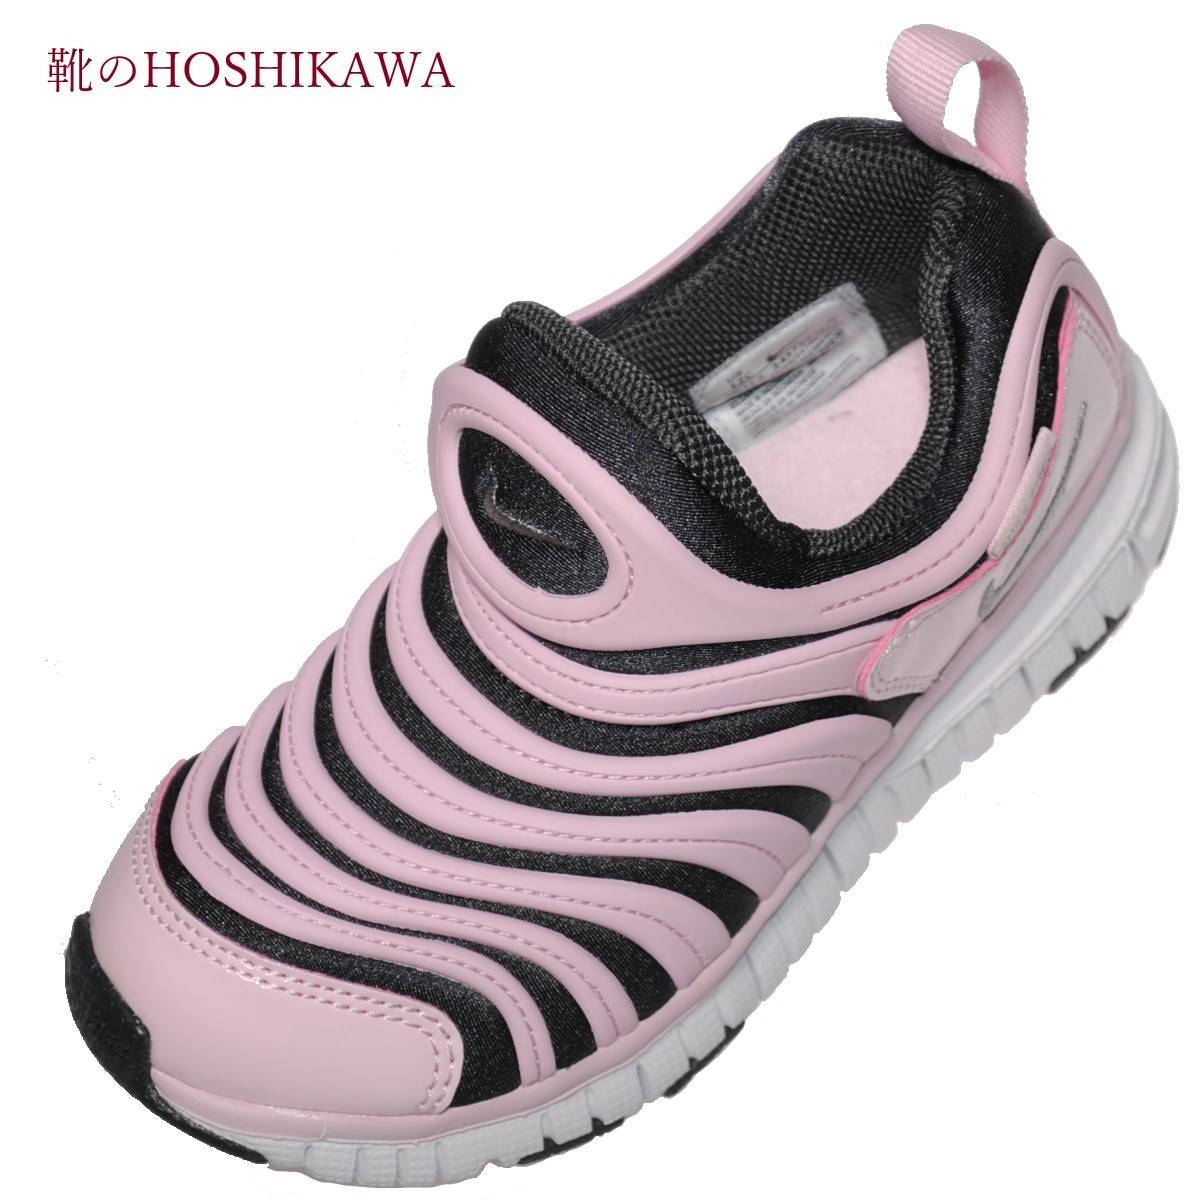 靴のhoshikawa Nike 027 ナイキ ダイナモフリー17cm 22cm キッズスリッポン スモークグレー Tajikhome Com